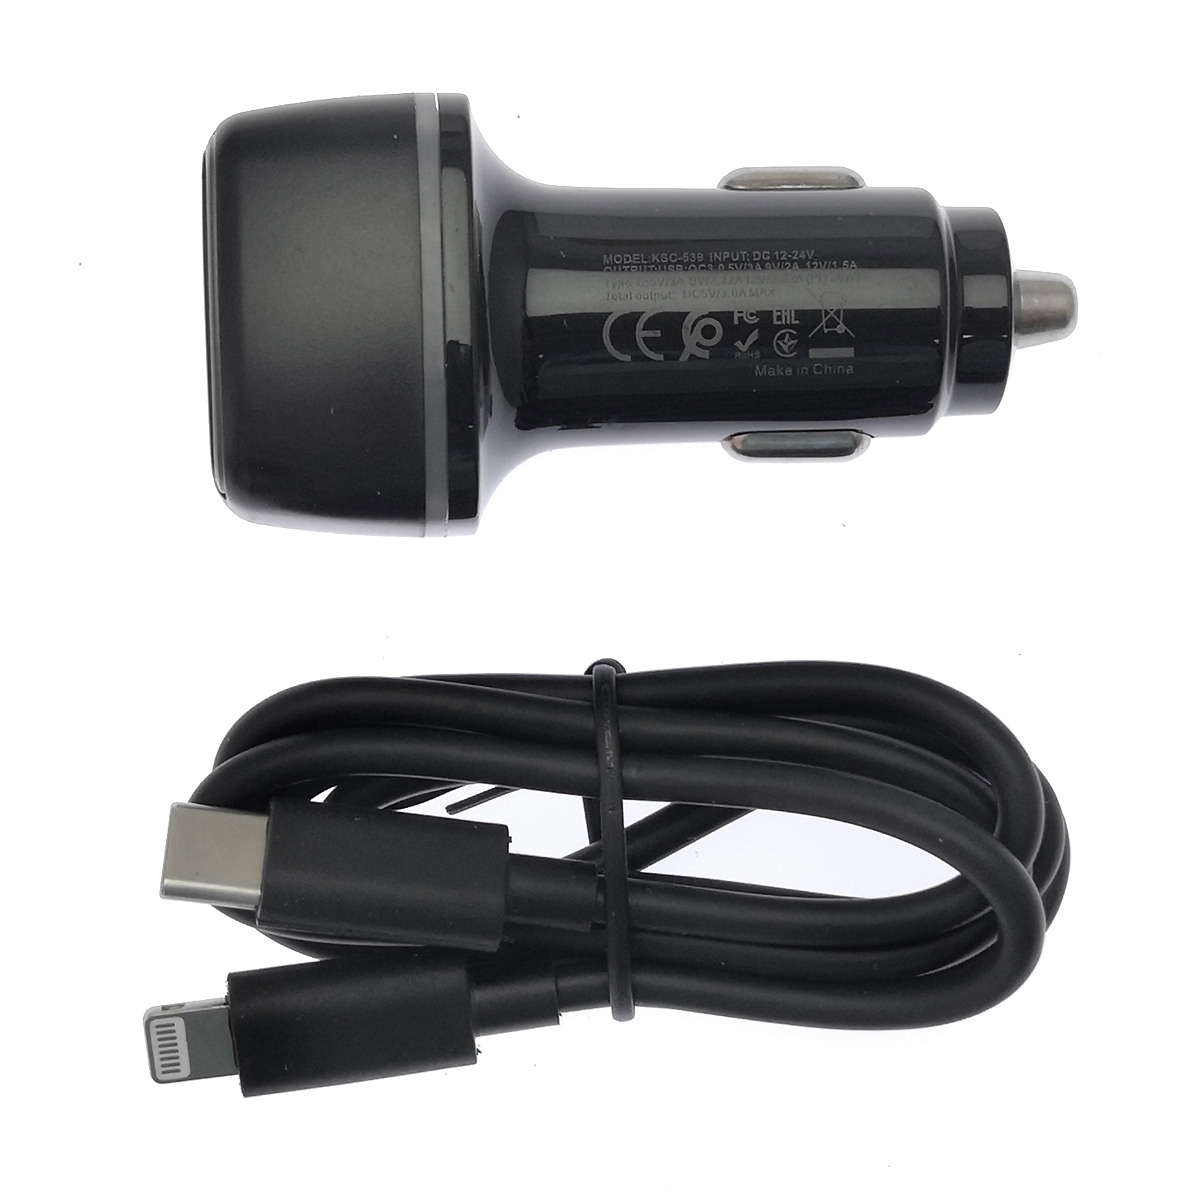 АЗУ (Автомобильное зарядное устройство) KAKU KSC-540 c кабелем USB Type C на APPLE Lightning 8 pin, 20W, длина 1 метр, цвет черный